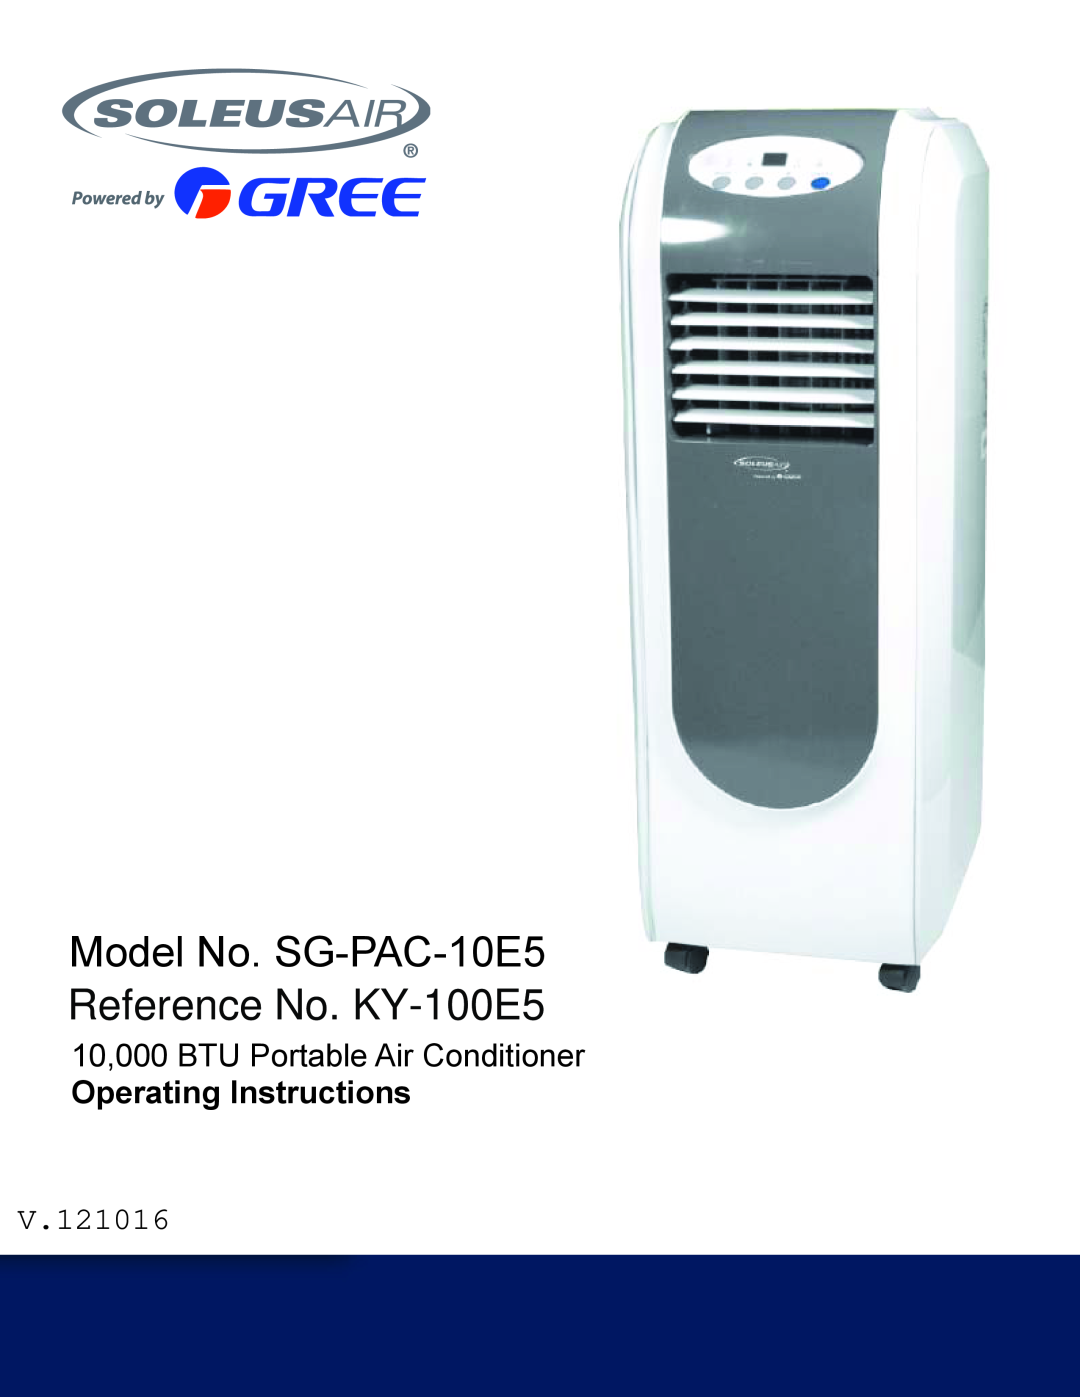 Soleus Air operating instructions Model No. SG-PAC-10E5, Reference No. KY-100E5, 10,000 BTU Portable Air Conditioner 